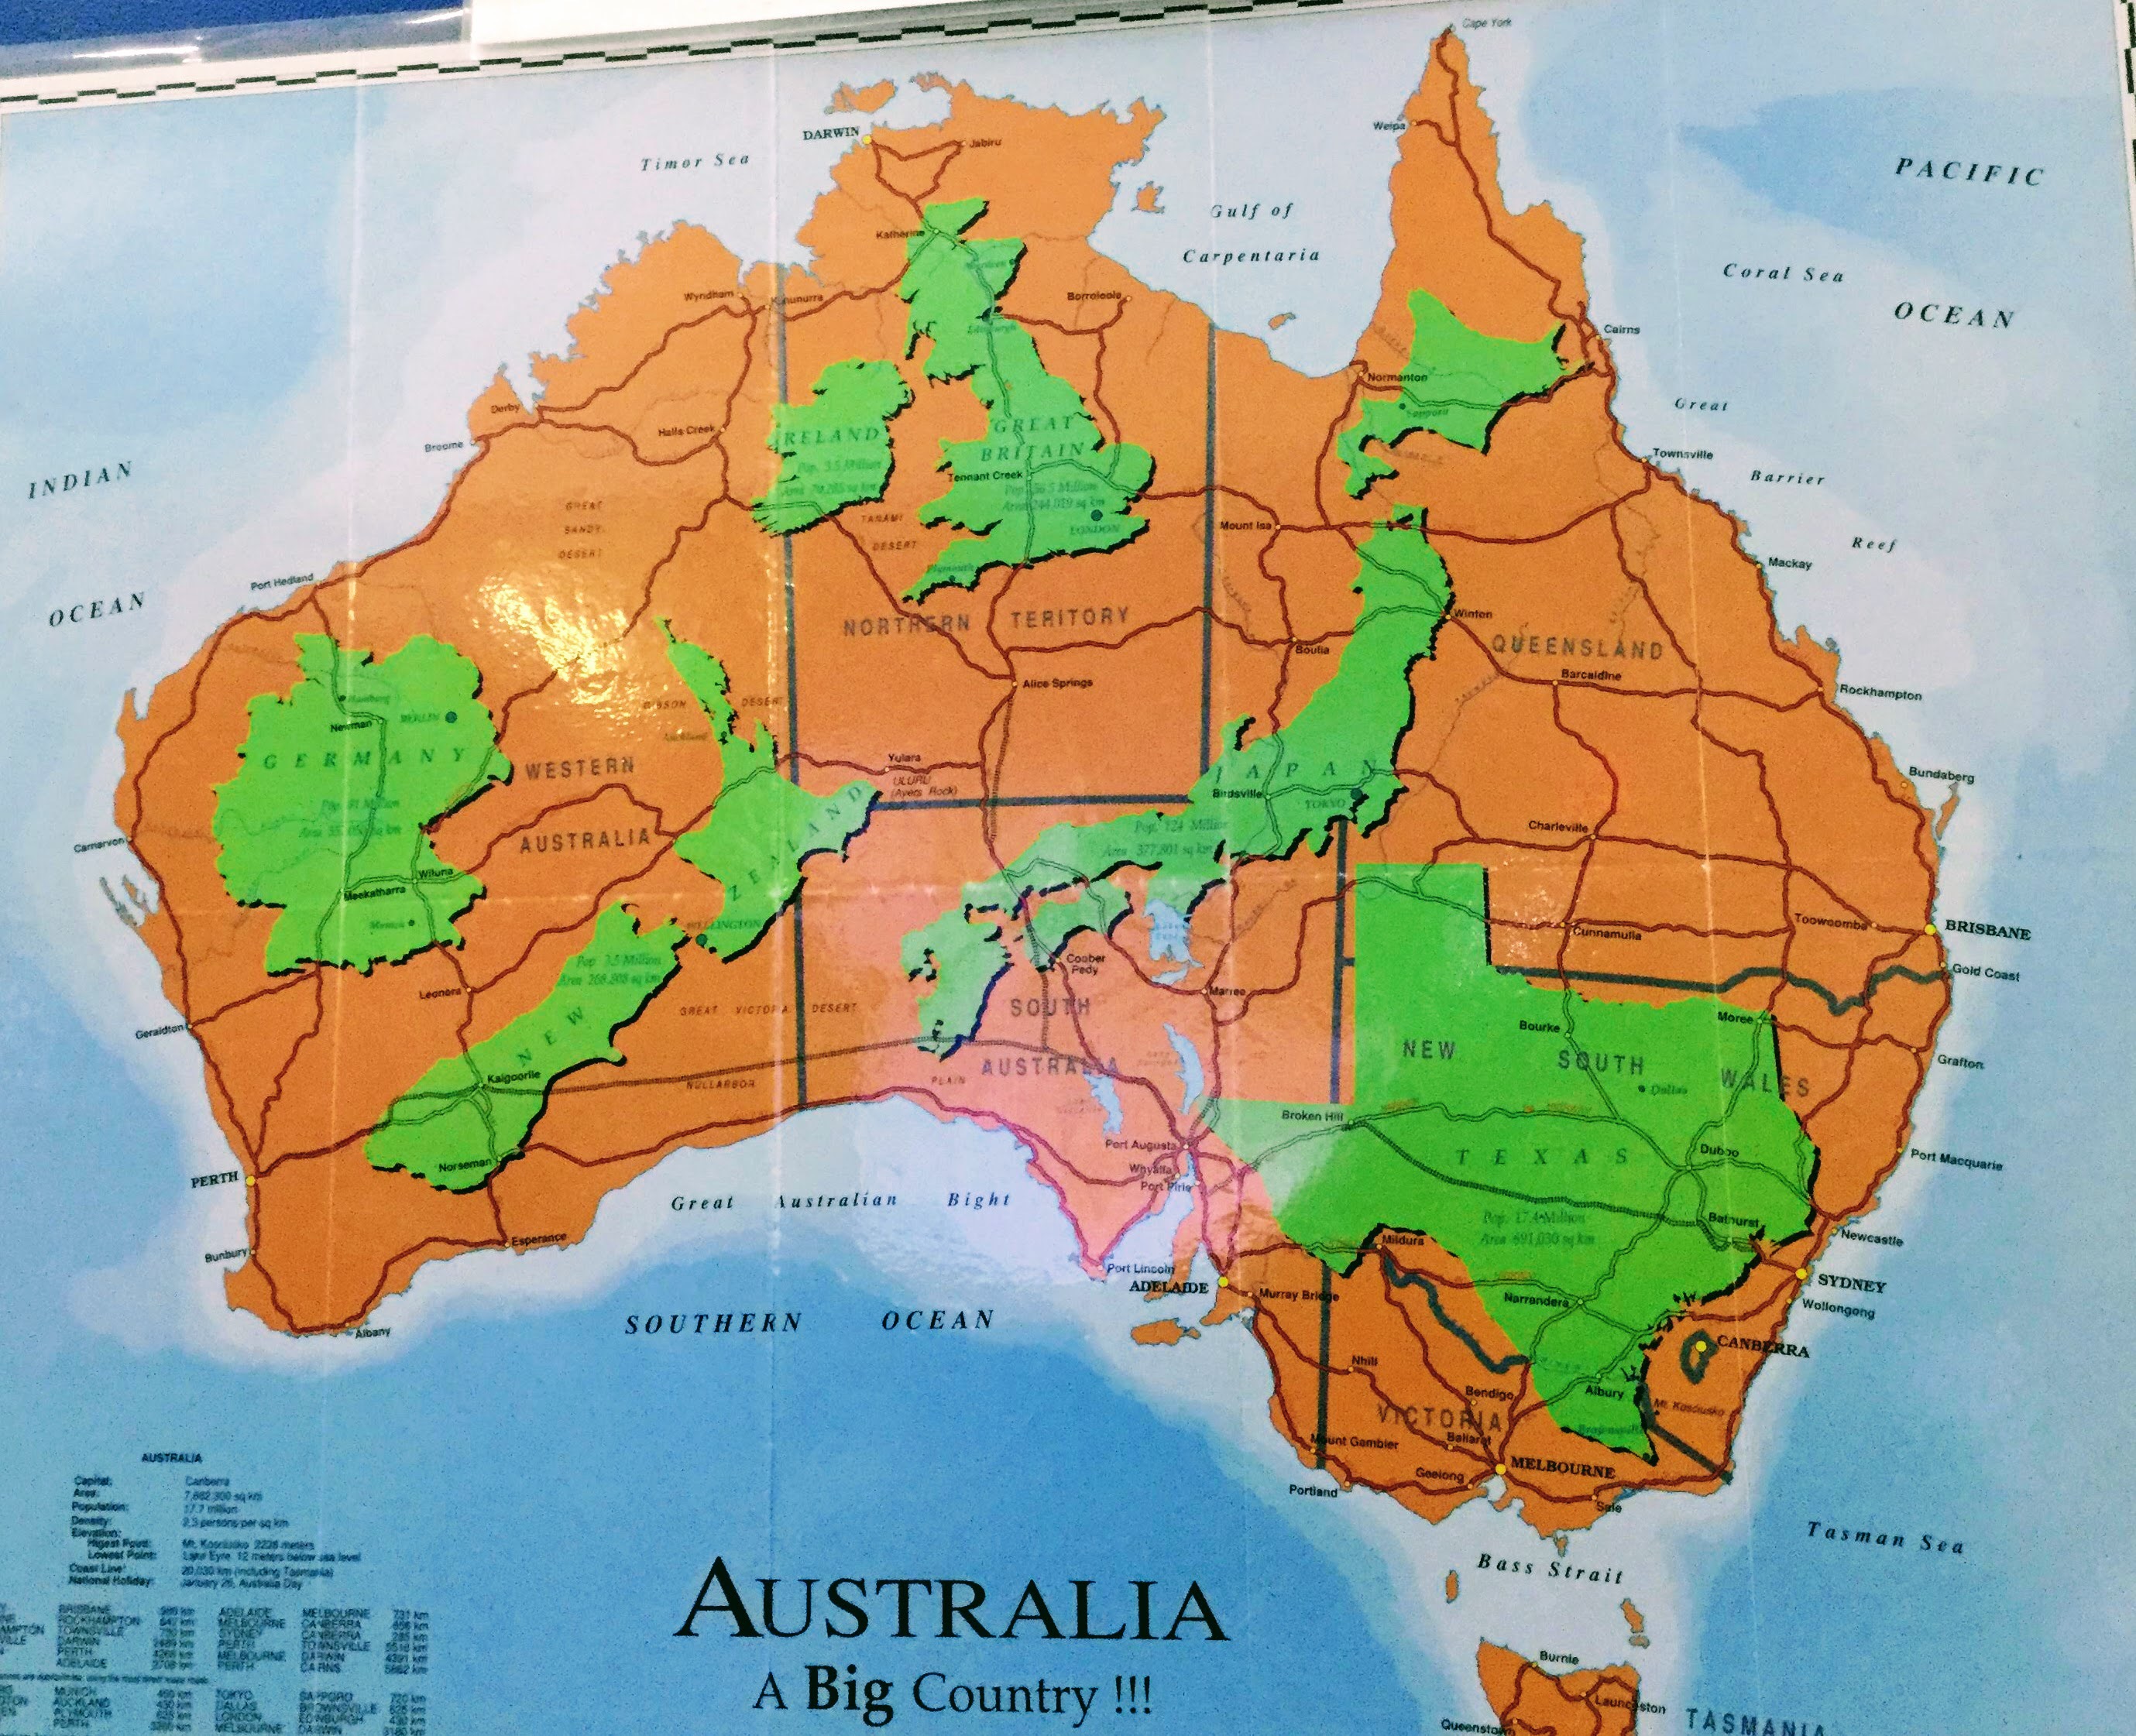 オーストラリアの地形がキャンプに適している理由